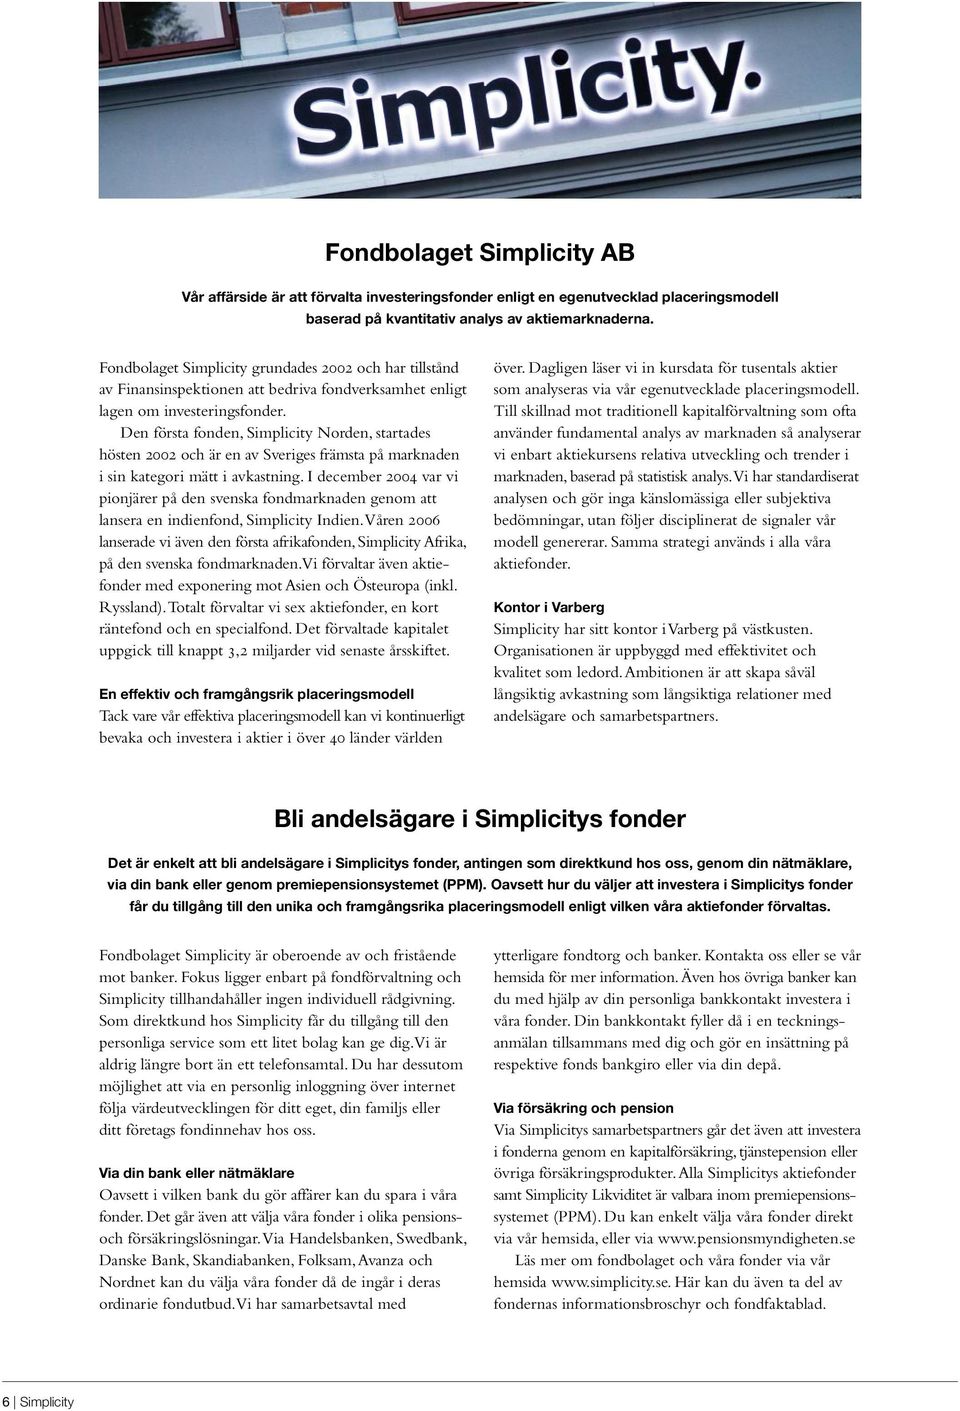 Den första fonden, Simplicity Norden, startades hösten 2002 och är en av Sveriges främsta på marknaden i sin kategori mätt i avkastning.